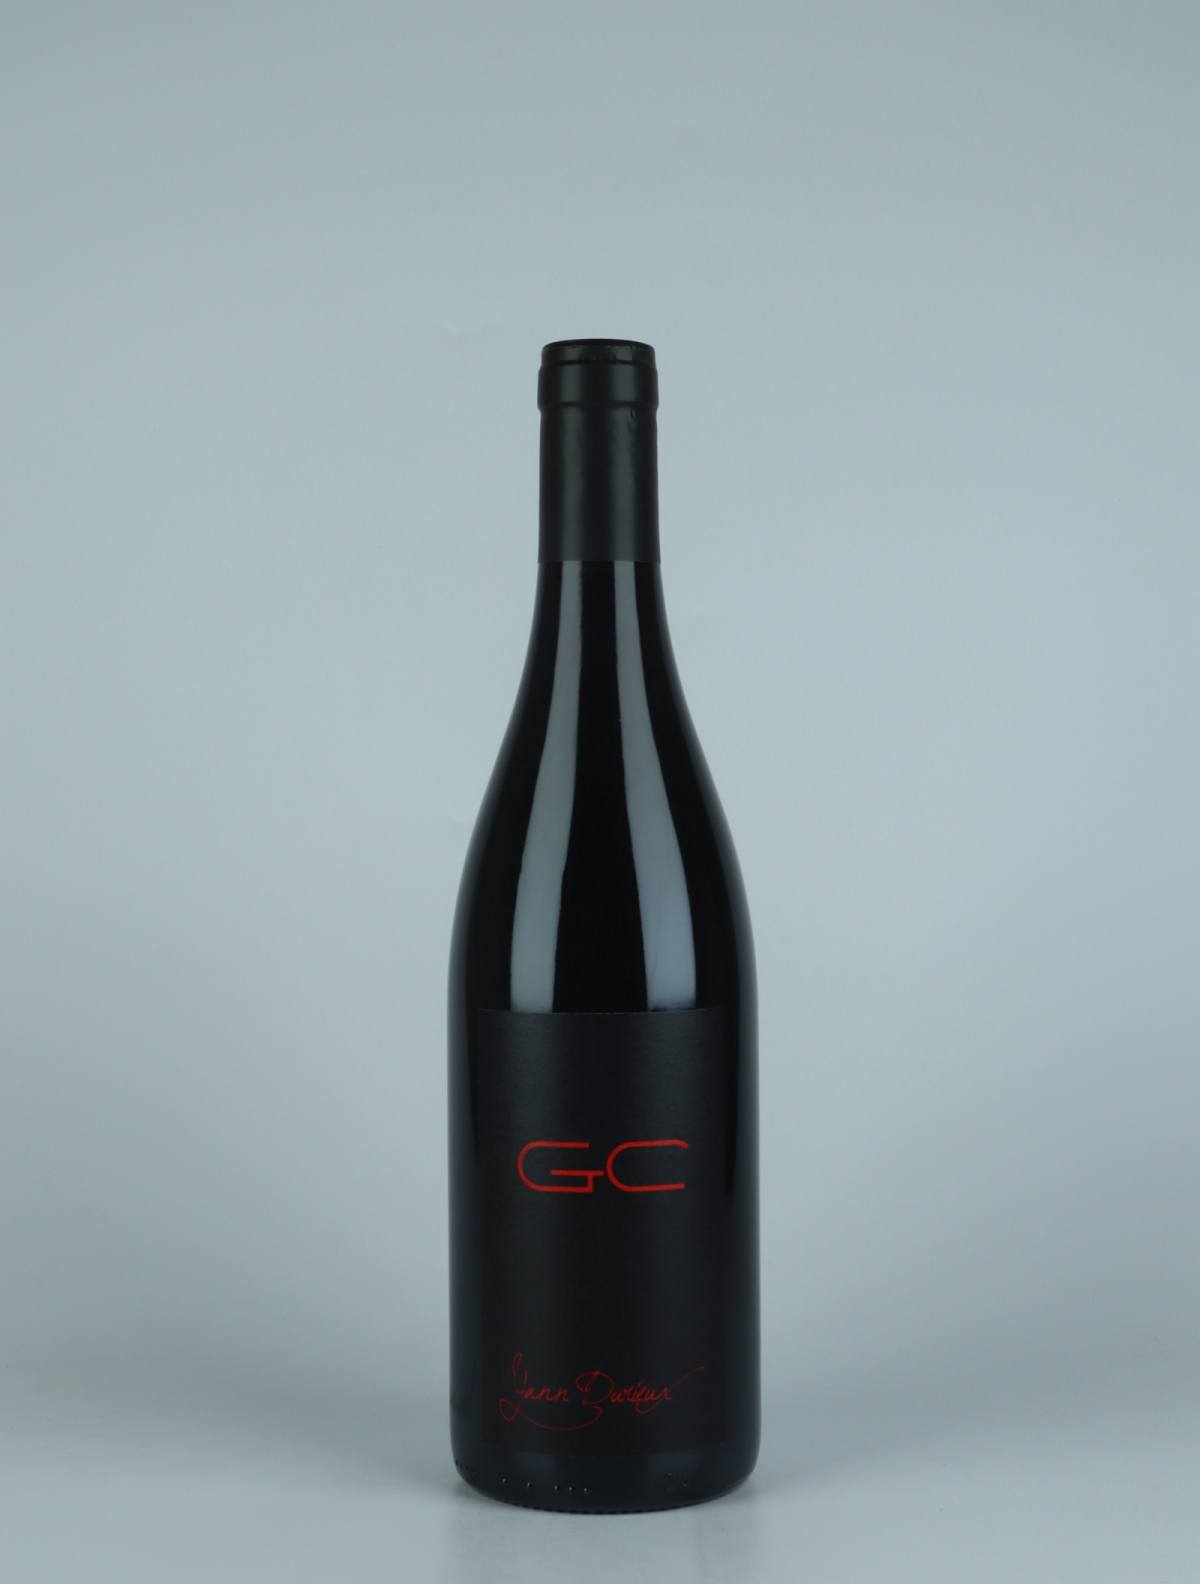 En flaske 2019 GC Rødvin fra Yann Durieux, Bourgogne i Frankrig